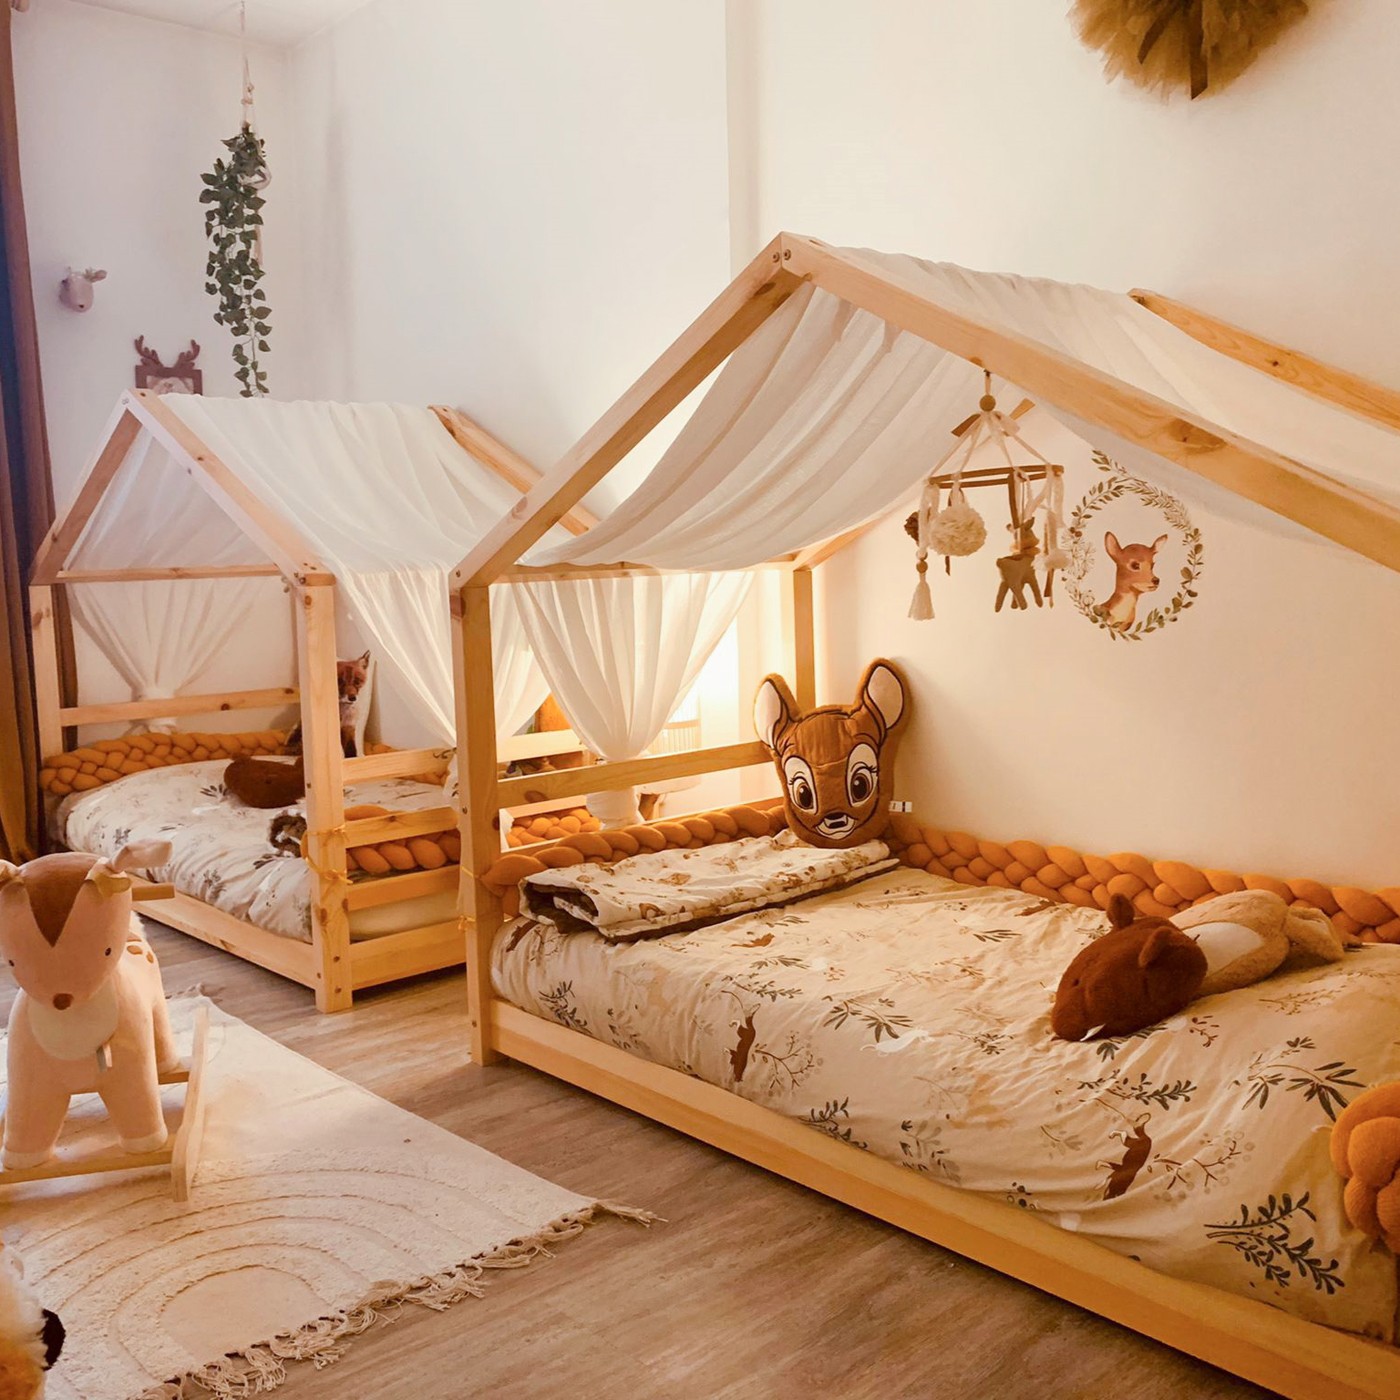 Comment décorer un lit cabane: 5 idées à peu de frais 